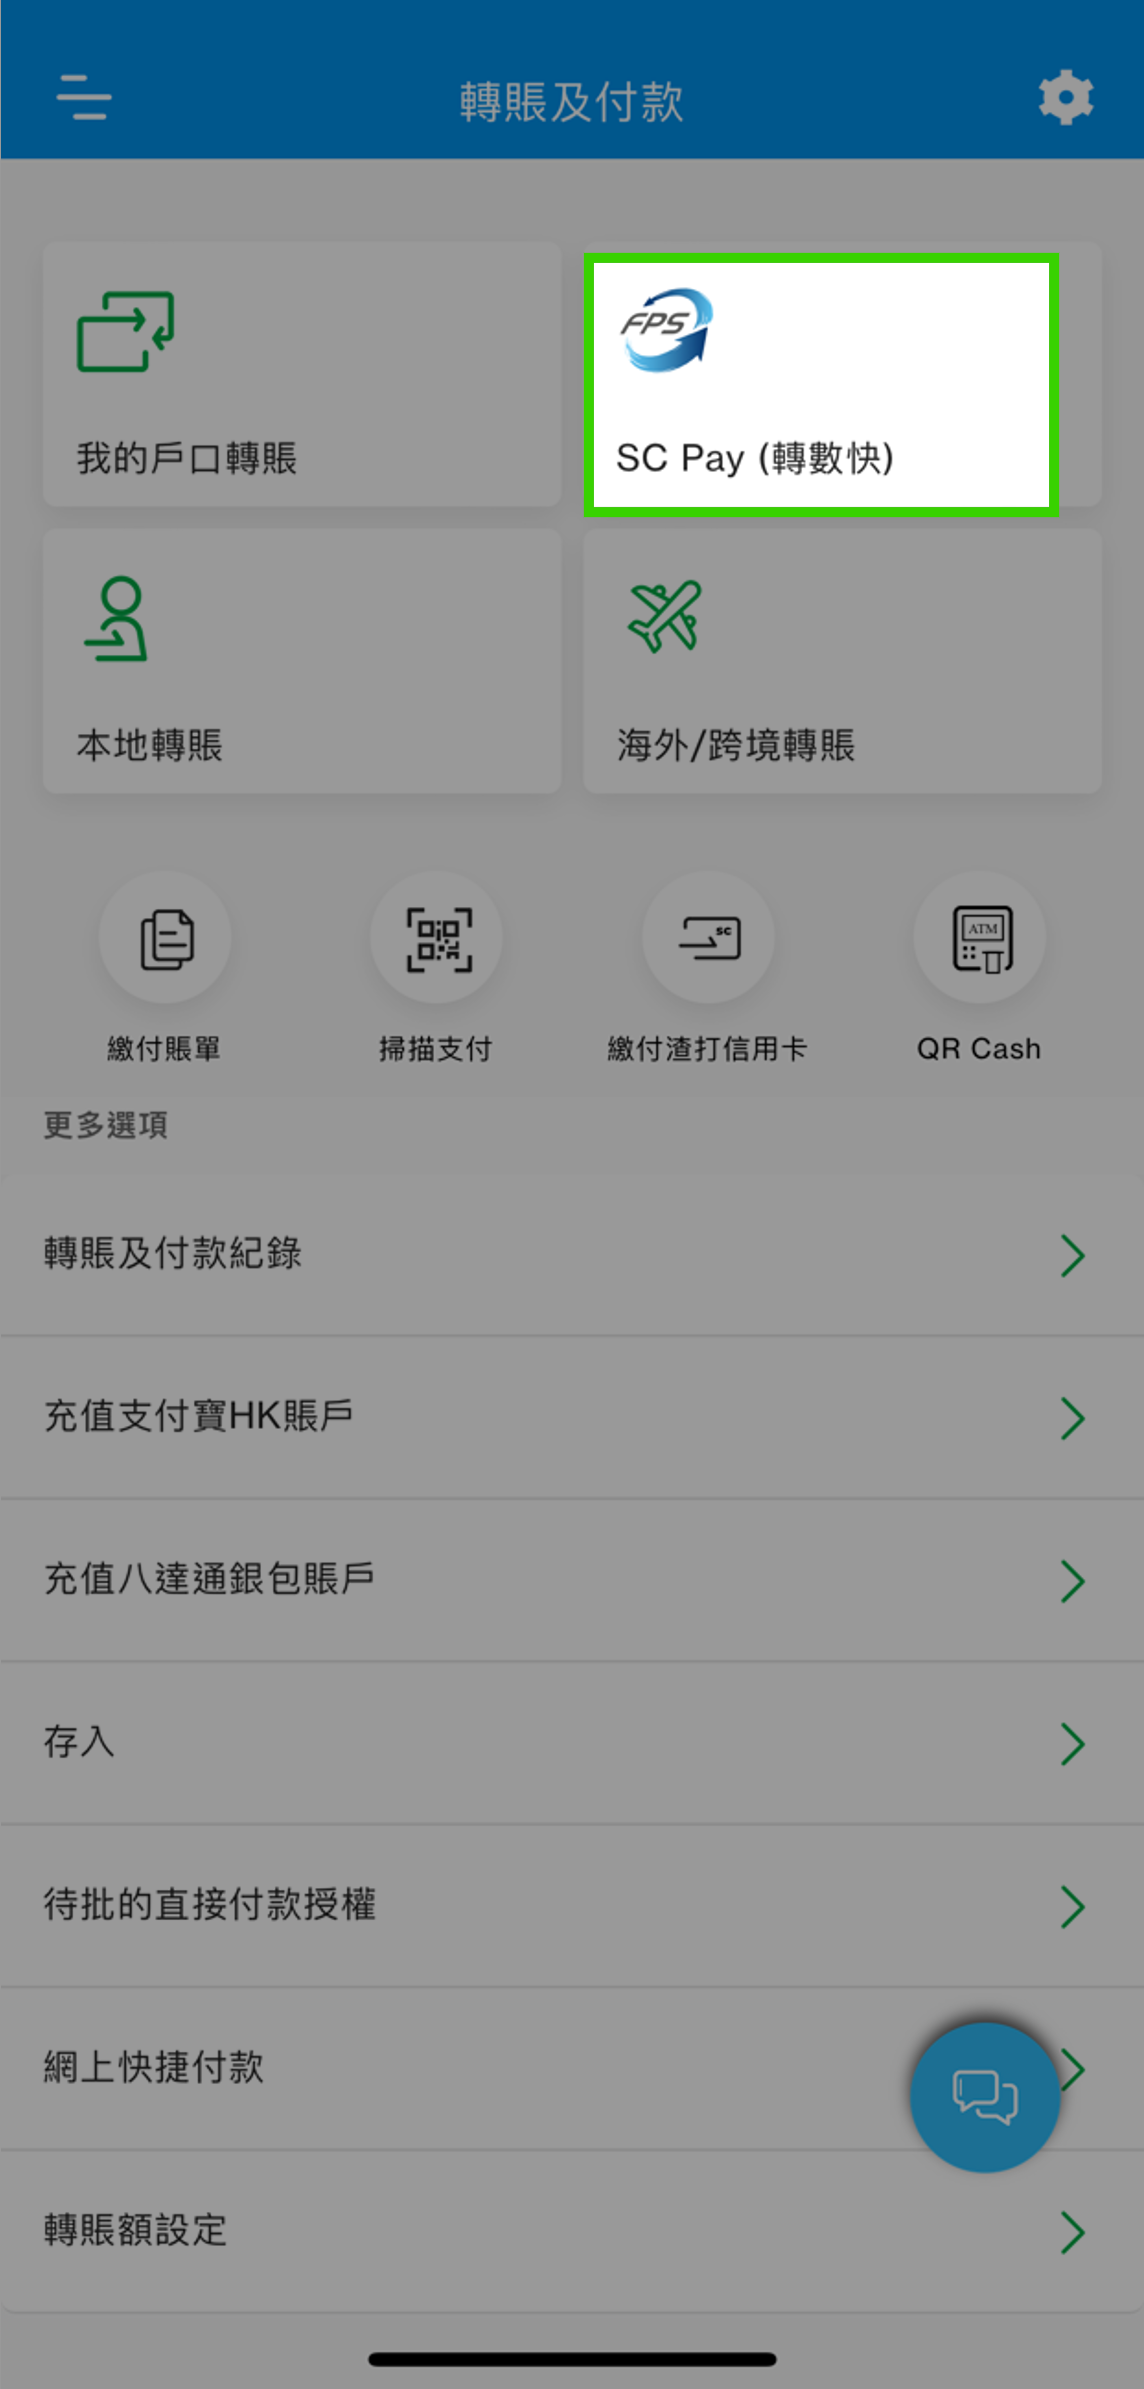 以您的香港流動電話號碼於AlipayHK登記「轉數快」｡ 登入SC Mobile App後,前往「轉賬及付款」然後選擇「 SC Pay (轉數快) 」